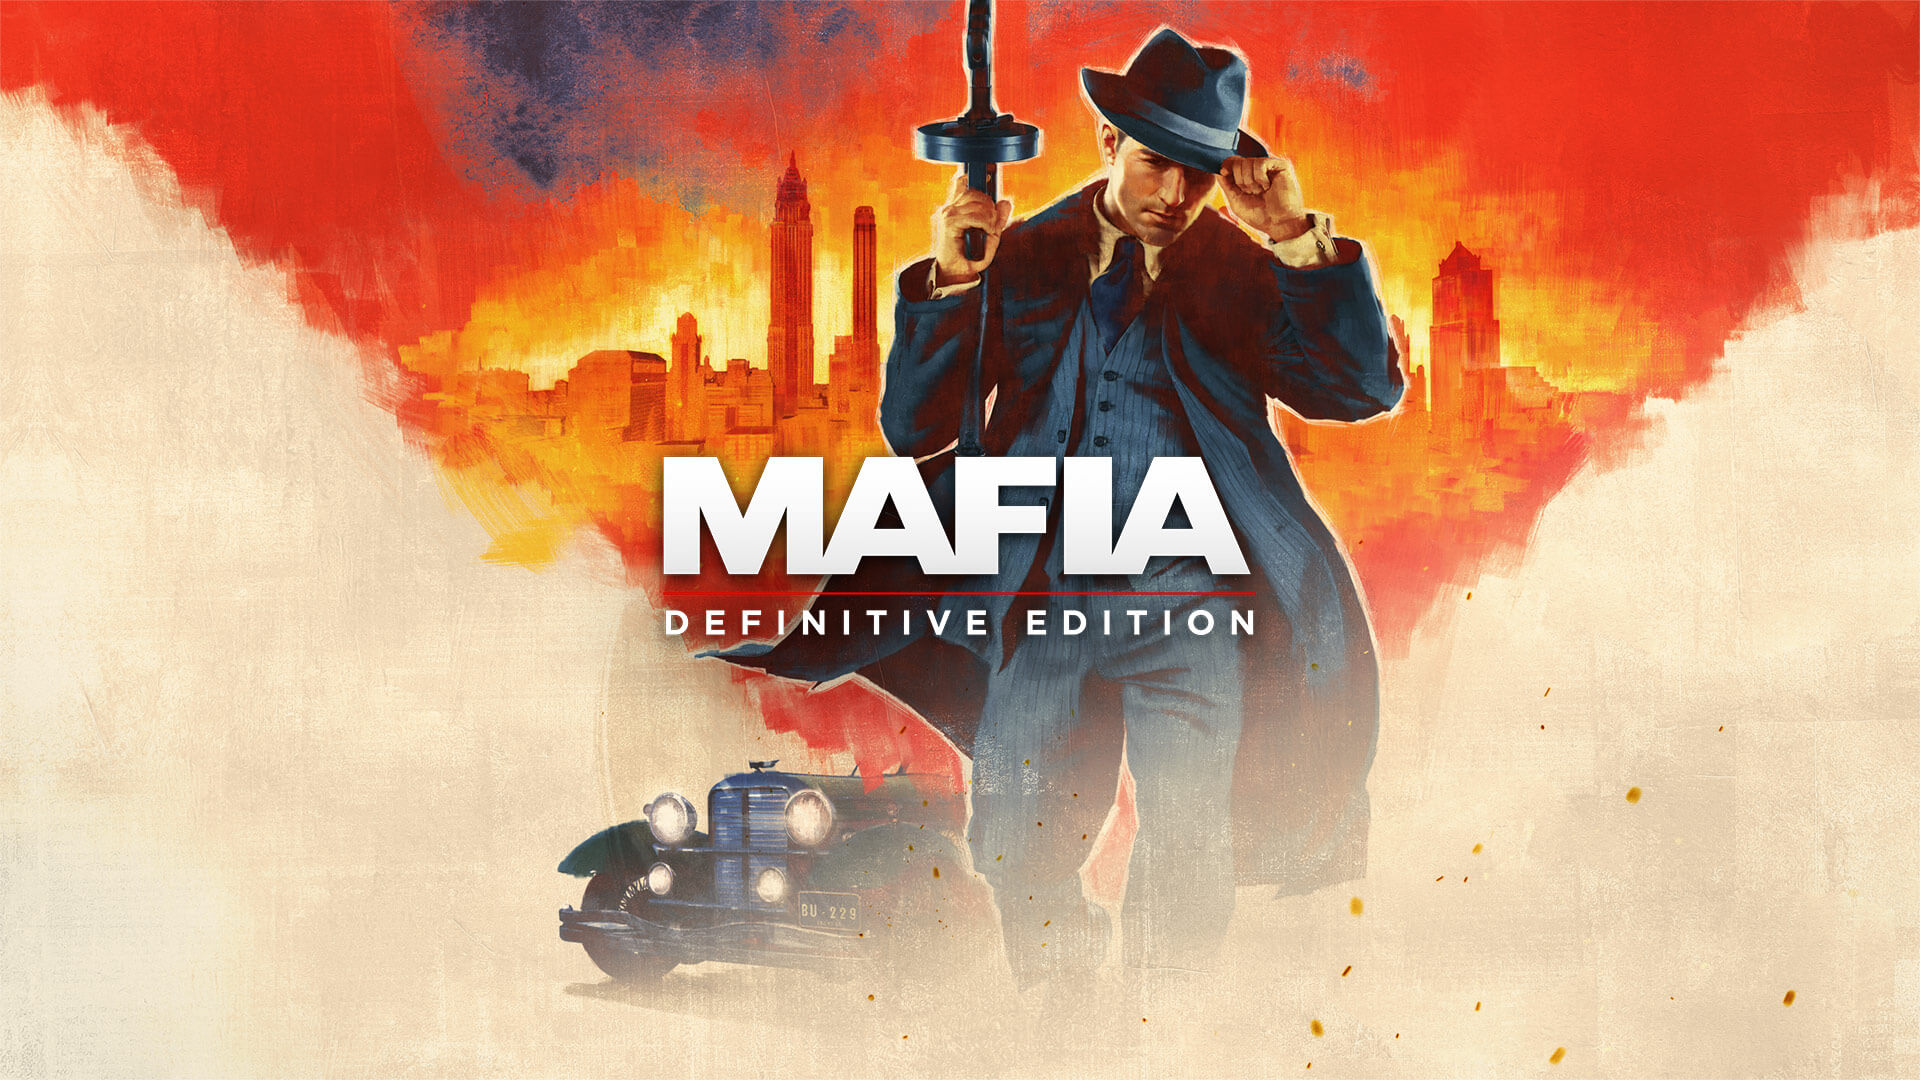 Uitgelichte games van mafia: definitieve editie in november 2021